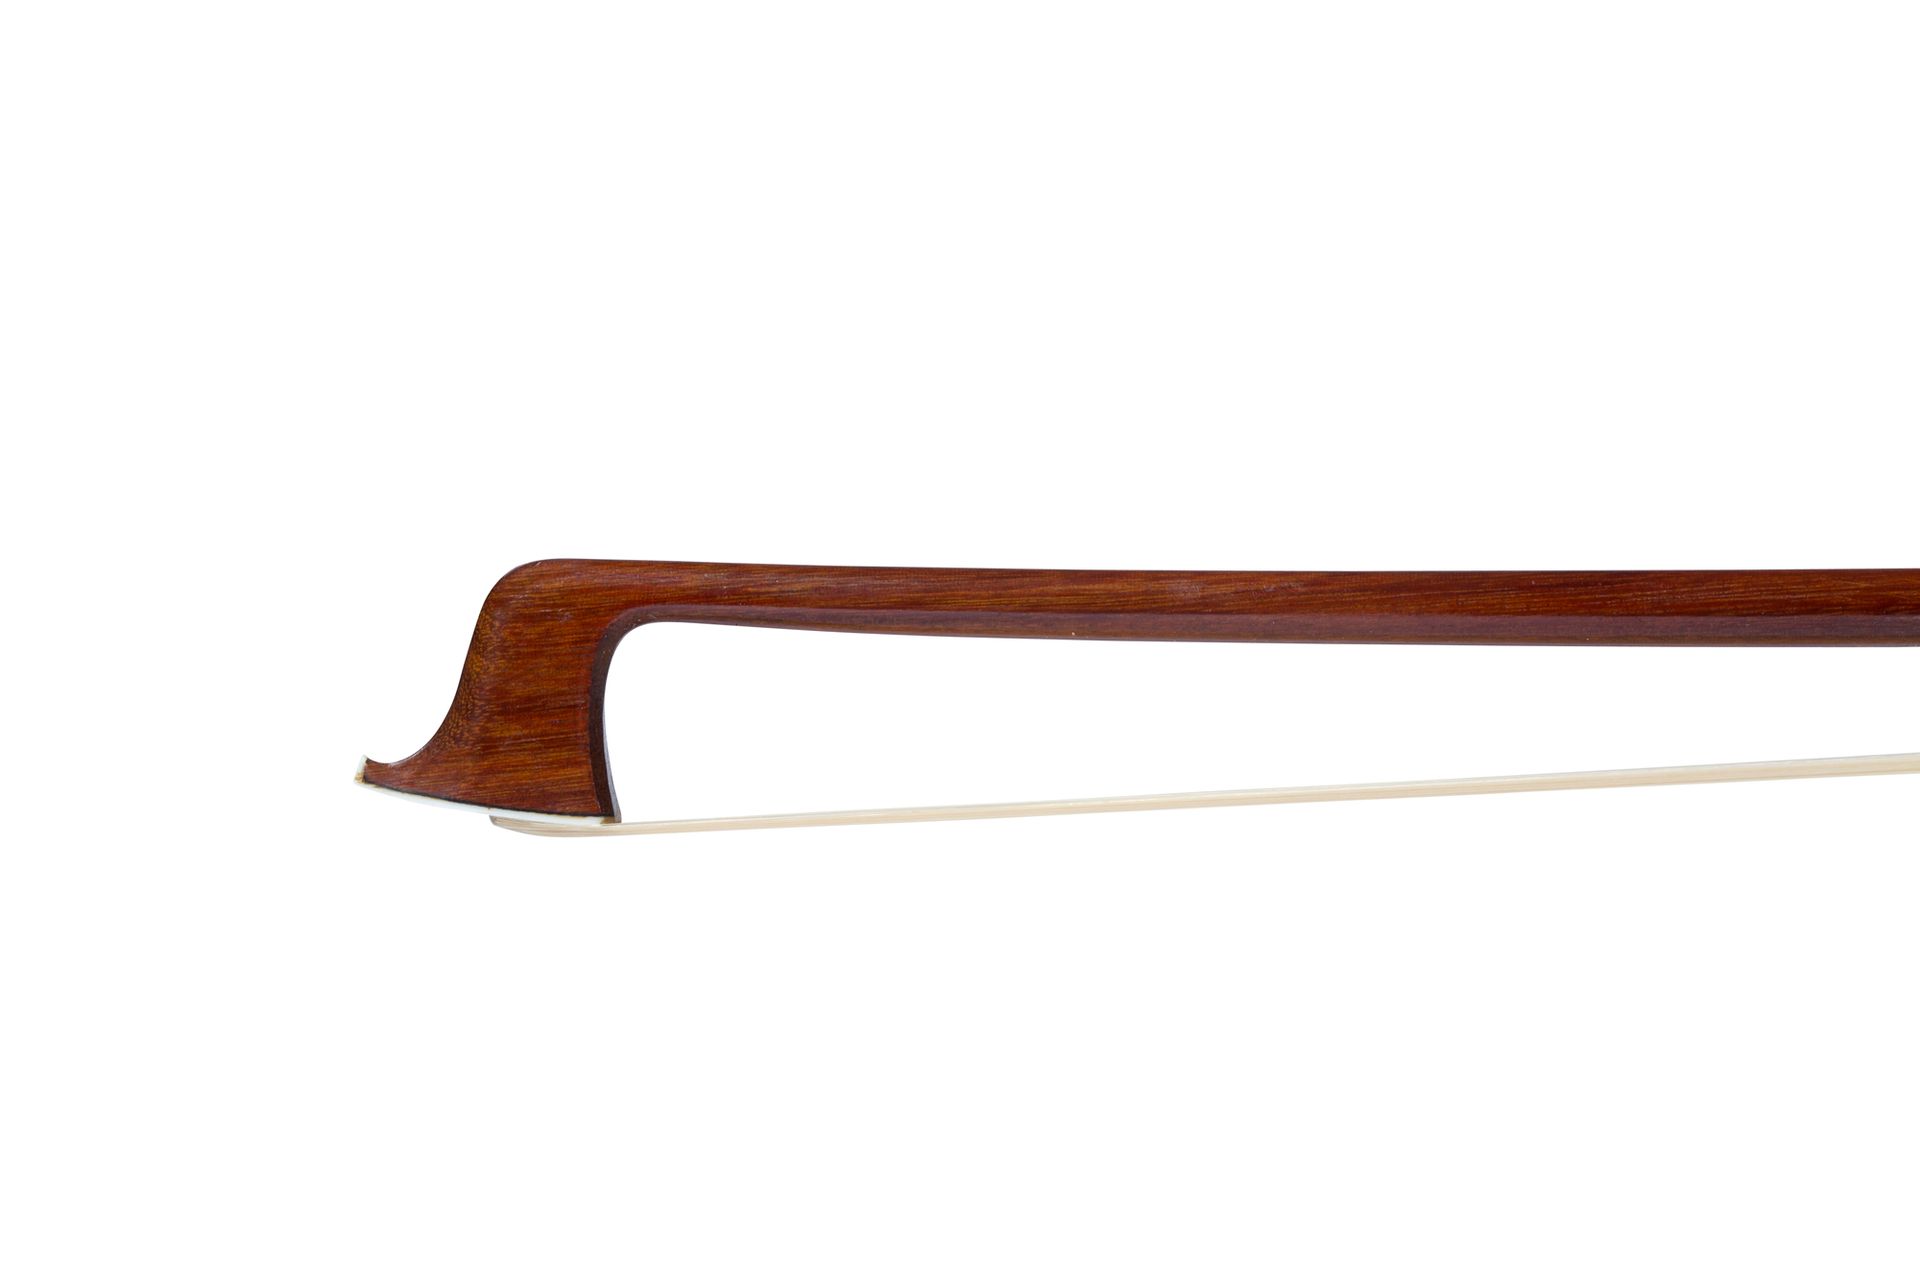 Null 弗朗索瓦-洛特的小提琴弓
约1950年
有签名的伯南布哥木棍，黑檀木和银质的青蛙和按钮
状况非常好，像新的一样，有原来的配件和盘子
重量：62.3克。&hellip;